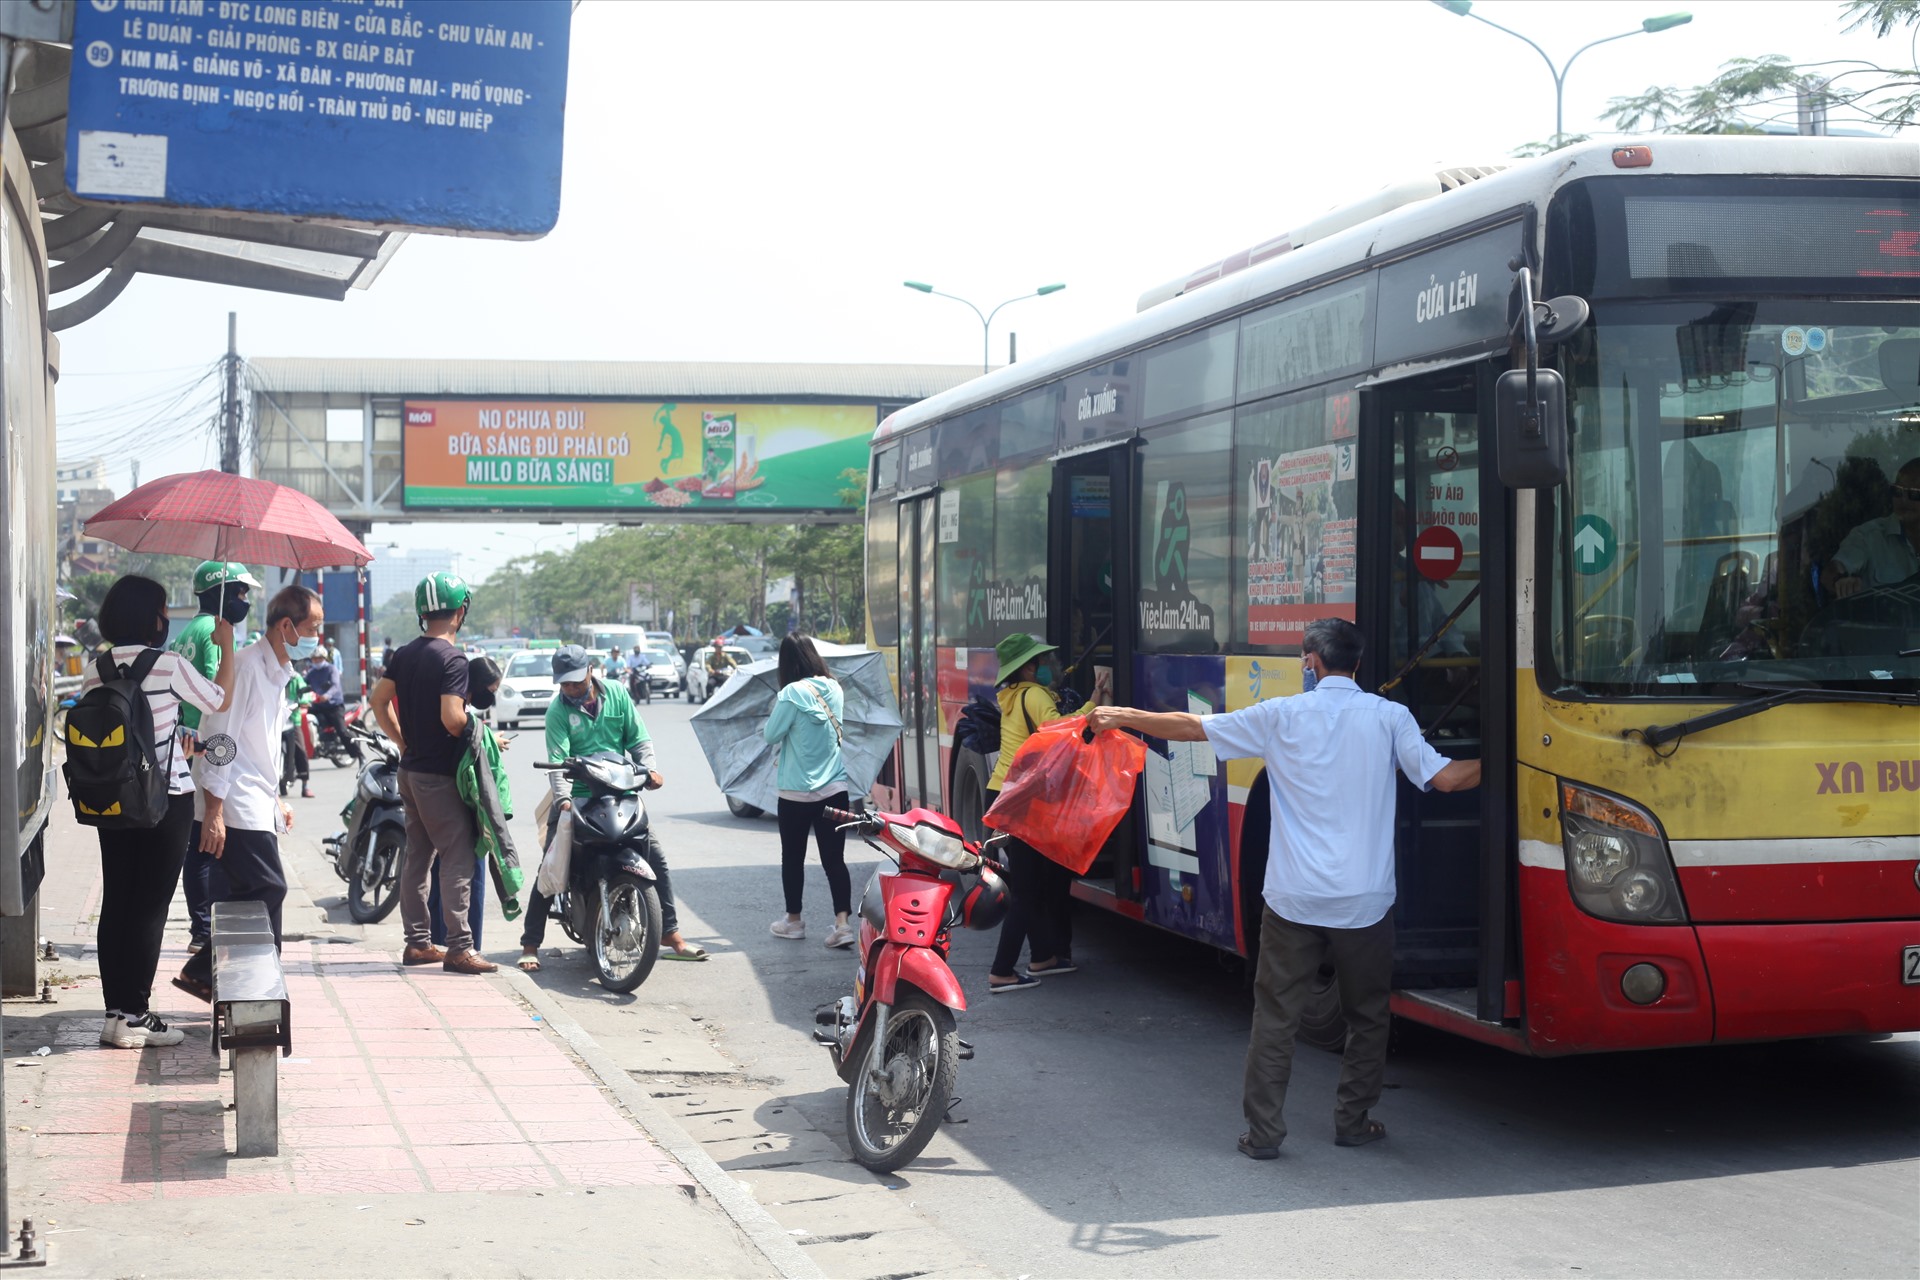 Xxe ôm thường xuyên dừng đỗ đón bắt khách làm cản trở xe buýt vào nhà chờ, tiềm ẩn nguy cơ gây ra tai nạn giao thông. Ảnh PV